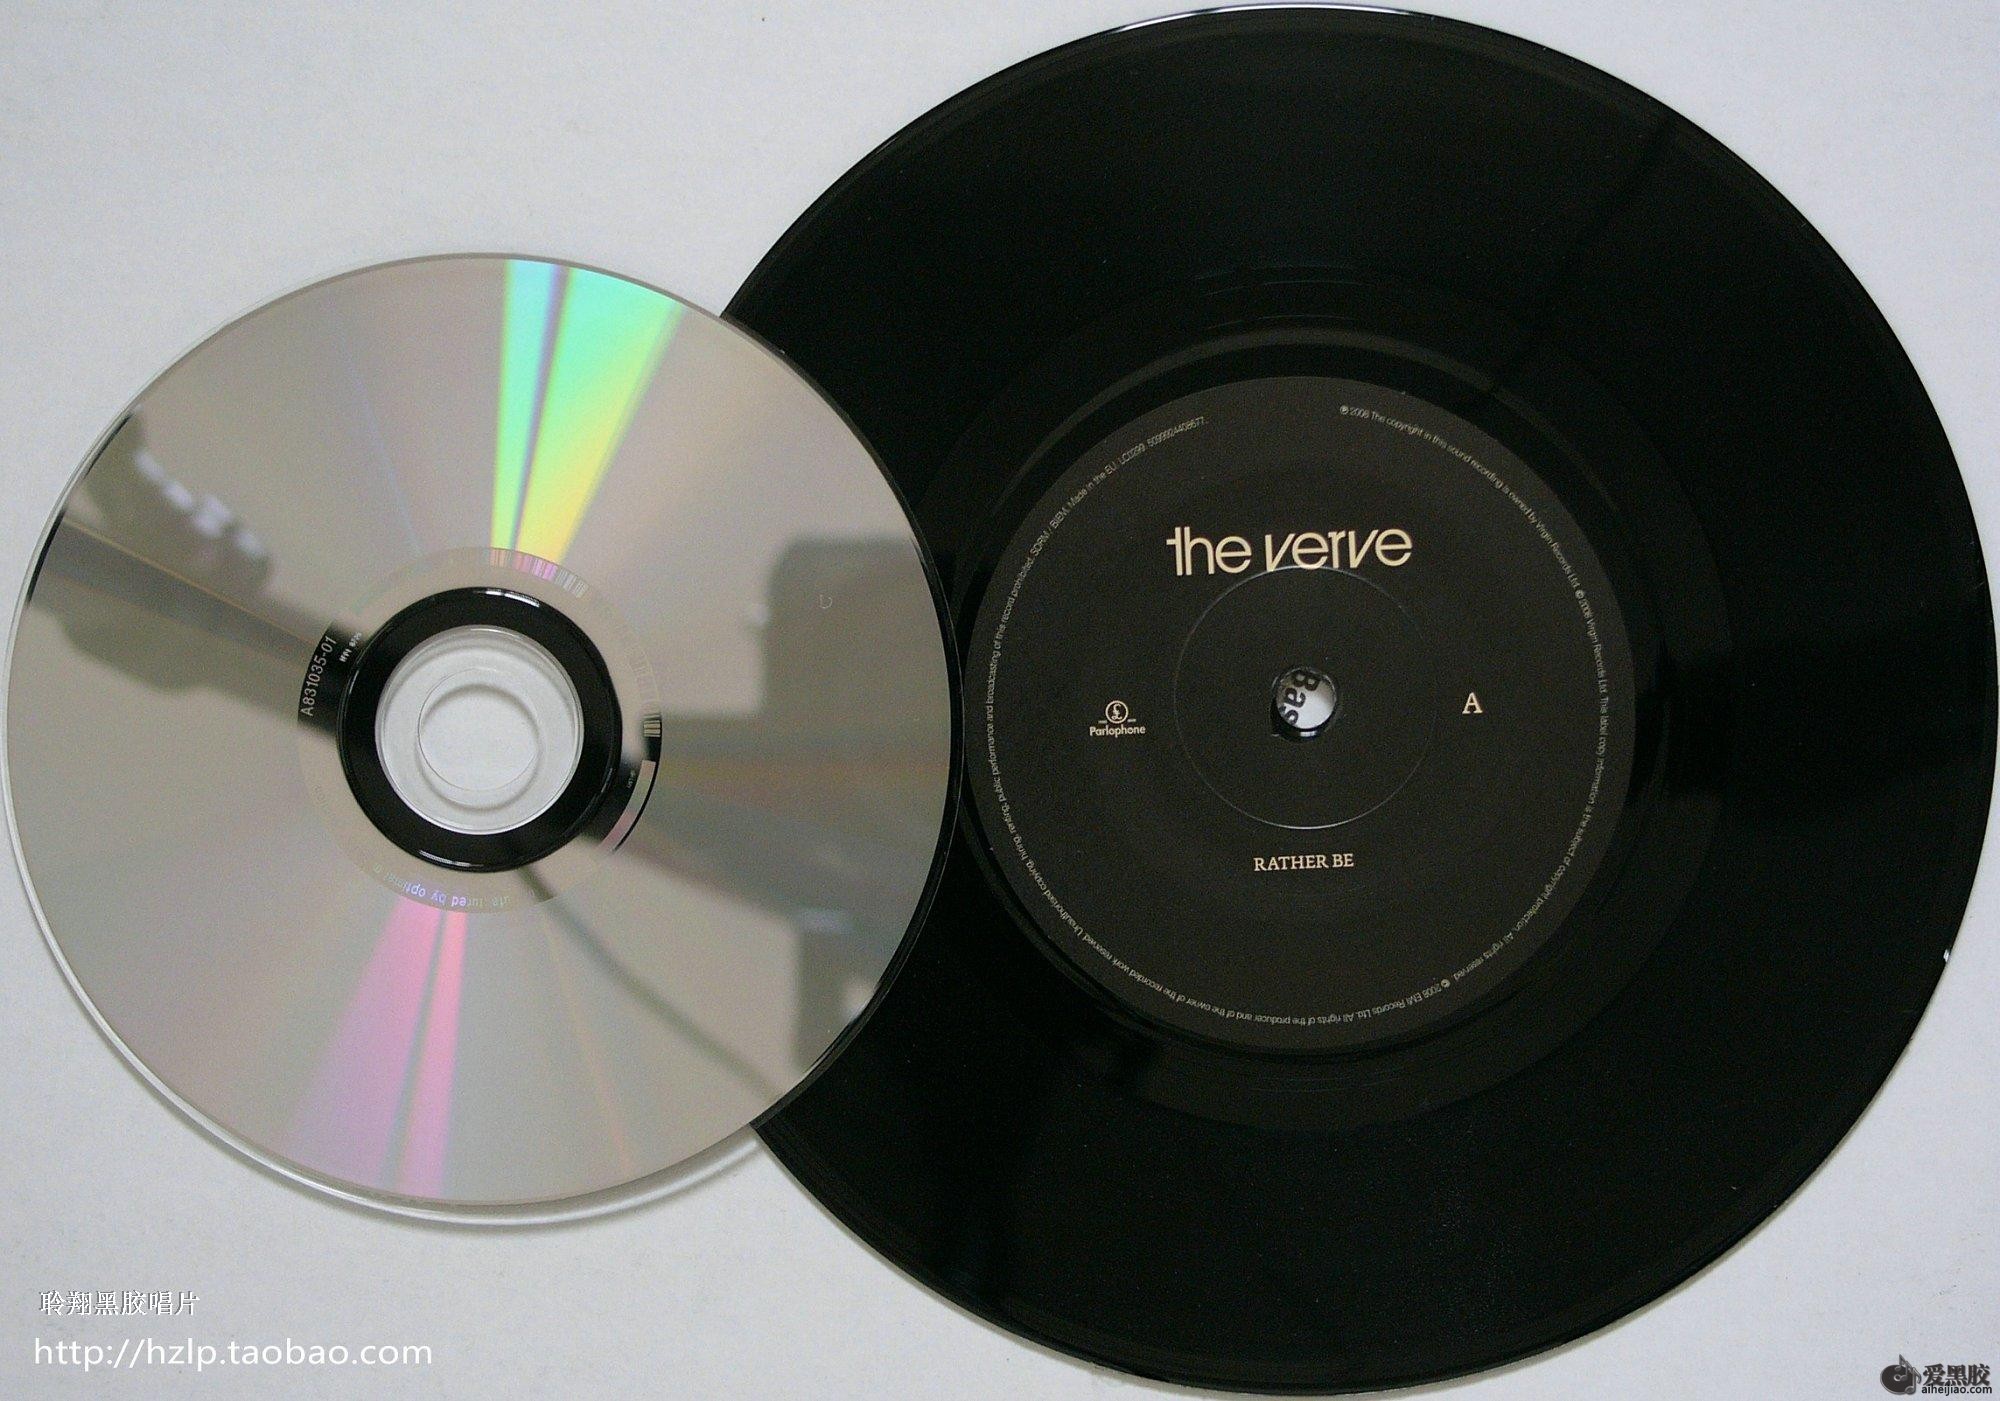 黑胶唱片销量自 1987 年以来首次超过 CD